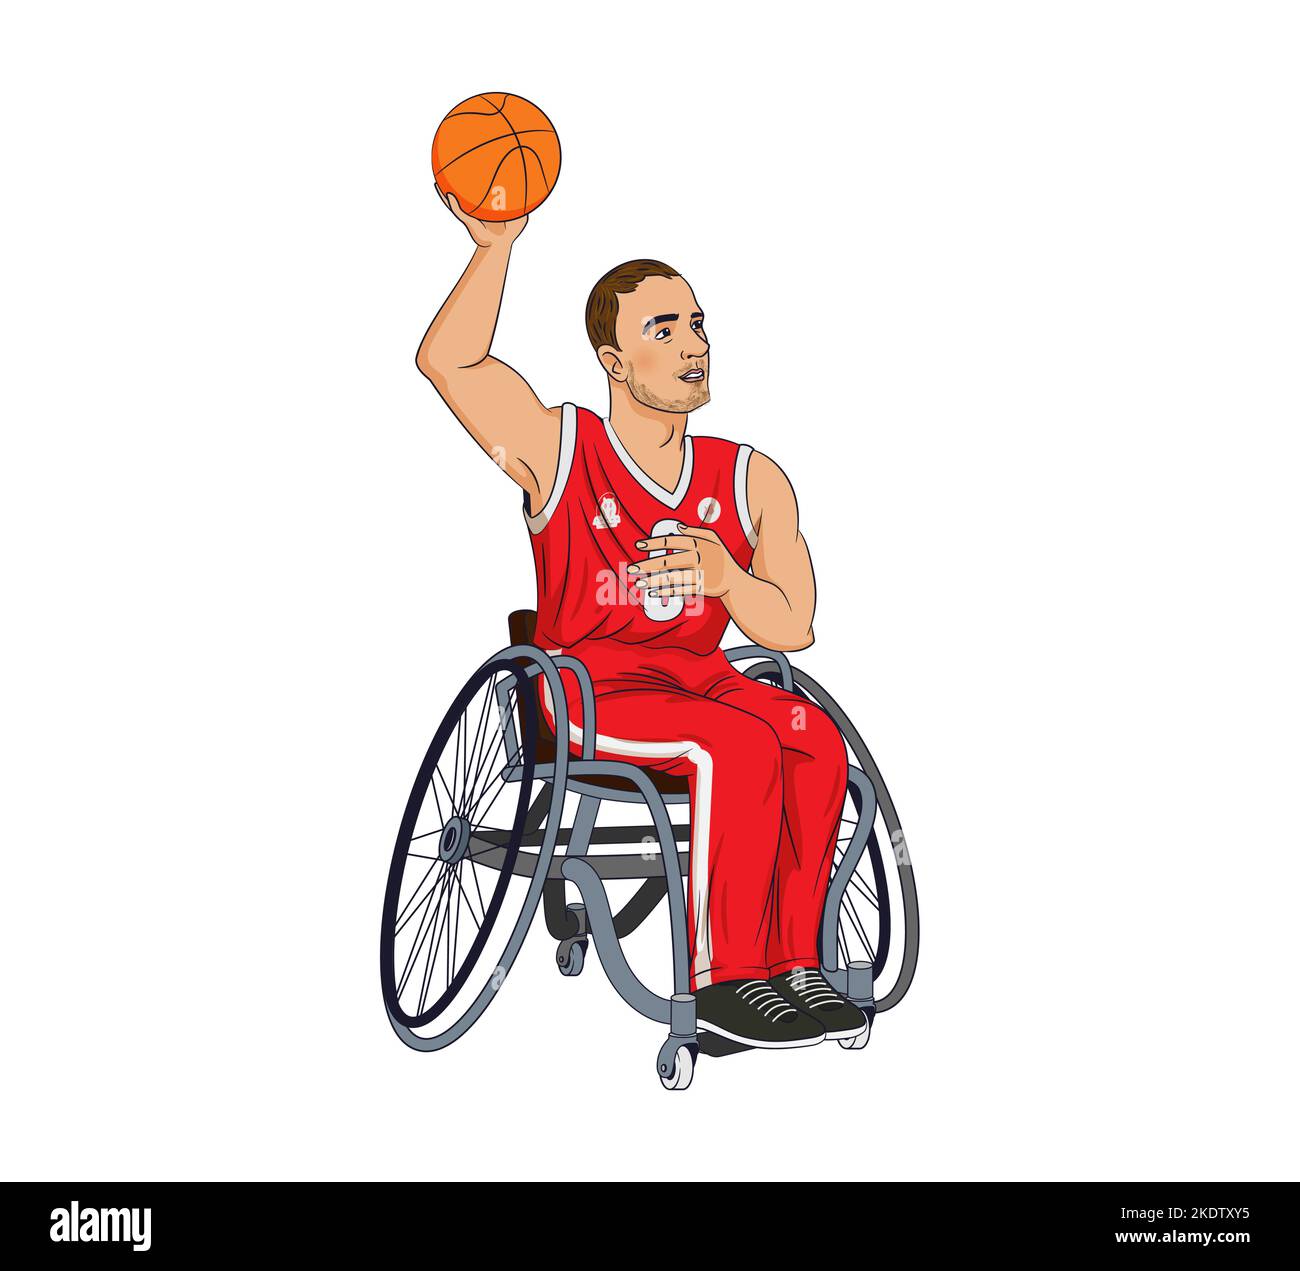 Paralympique en fauteuil roulant sportif, avec basket-ball. Illustration vectorielle de caractères dans un style d'esquisse plat Illustration de Vecteur